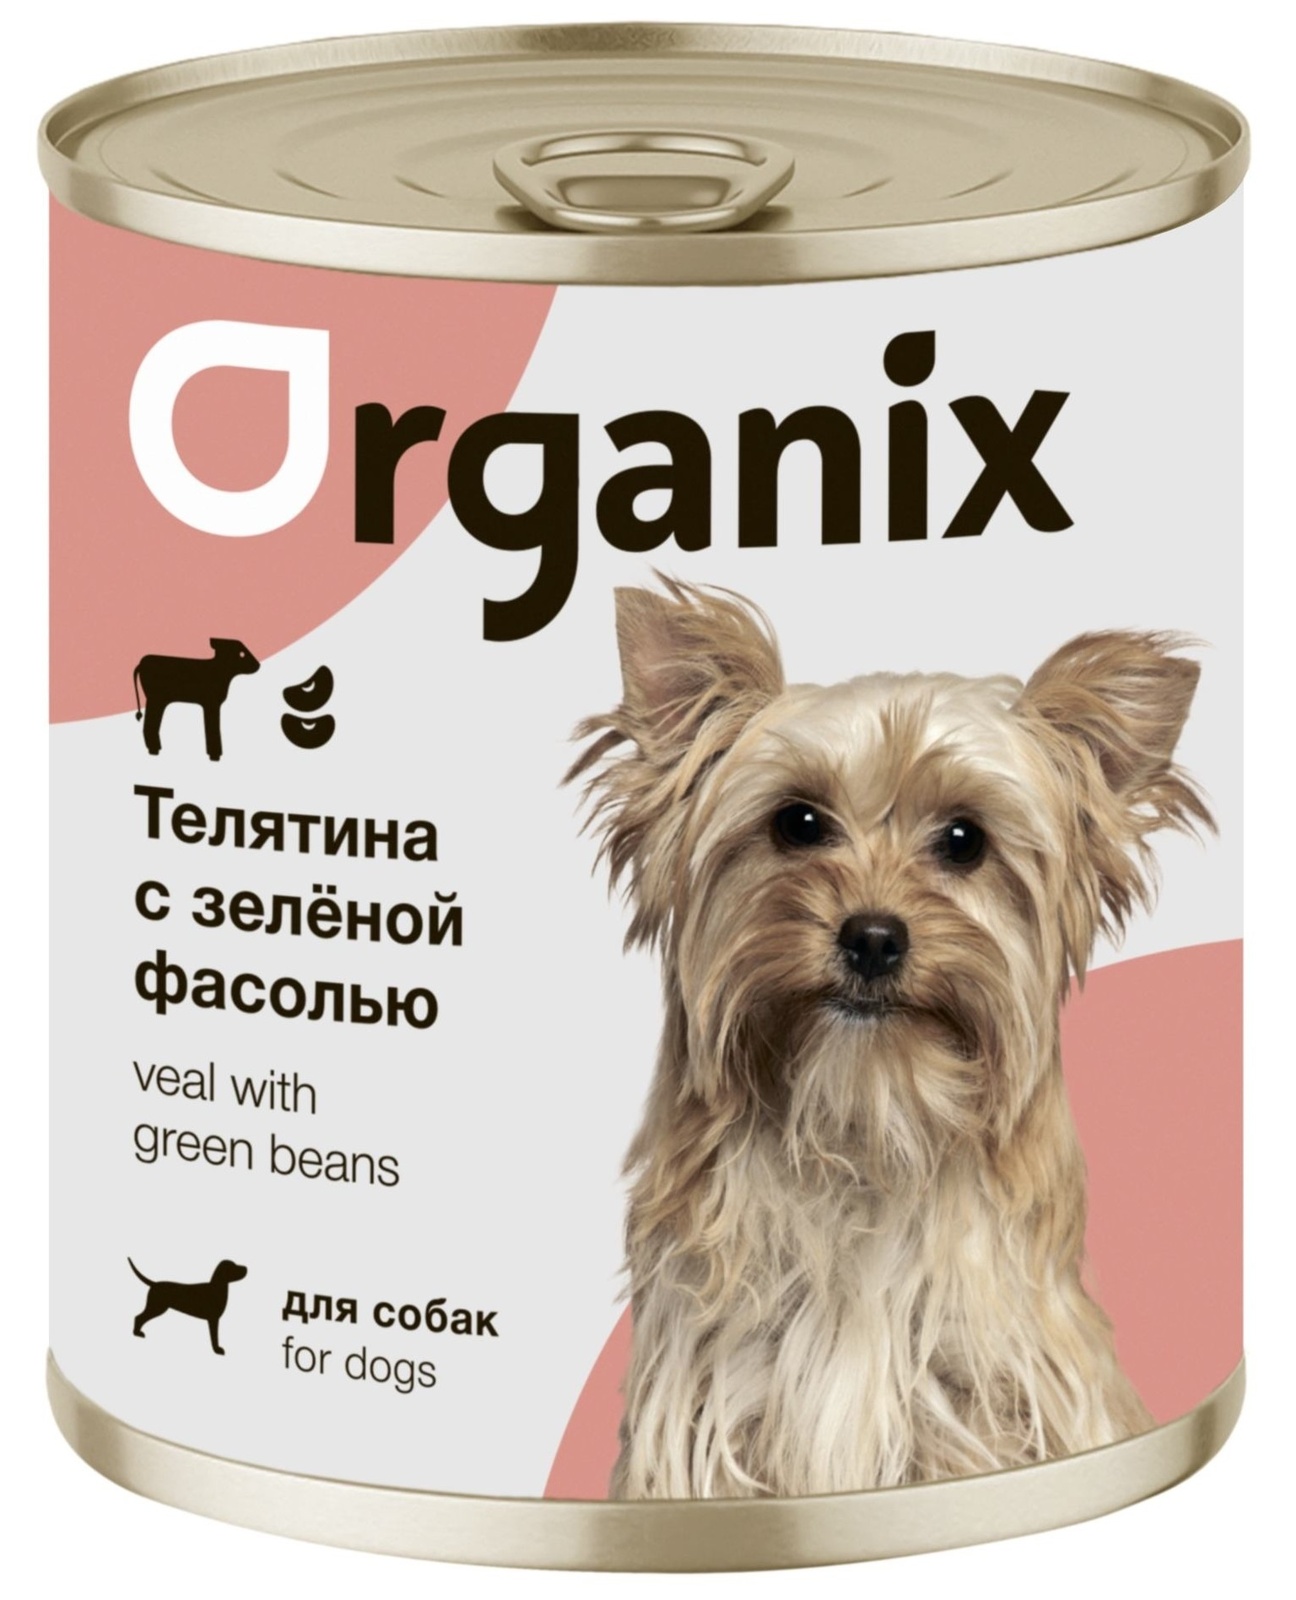 Organix консервы Organix консервы для собак Телятина с зеленой фасолью (400 г) organix консервы organix консервы для собак утка индейка картофель 400 г